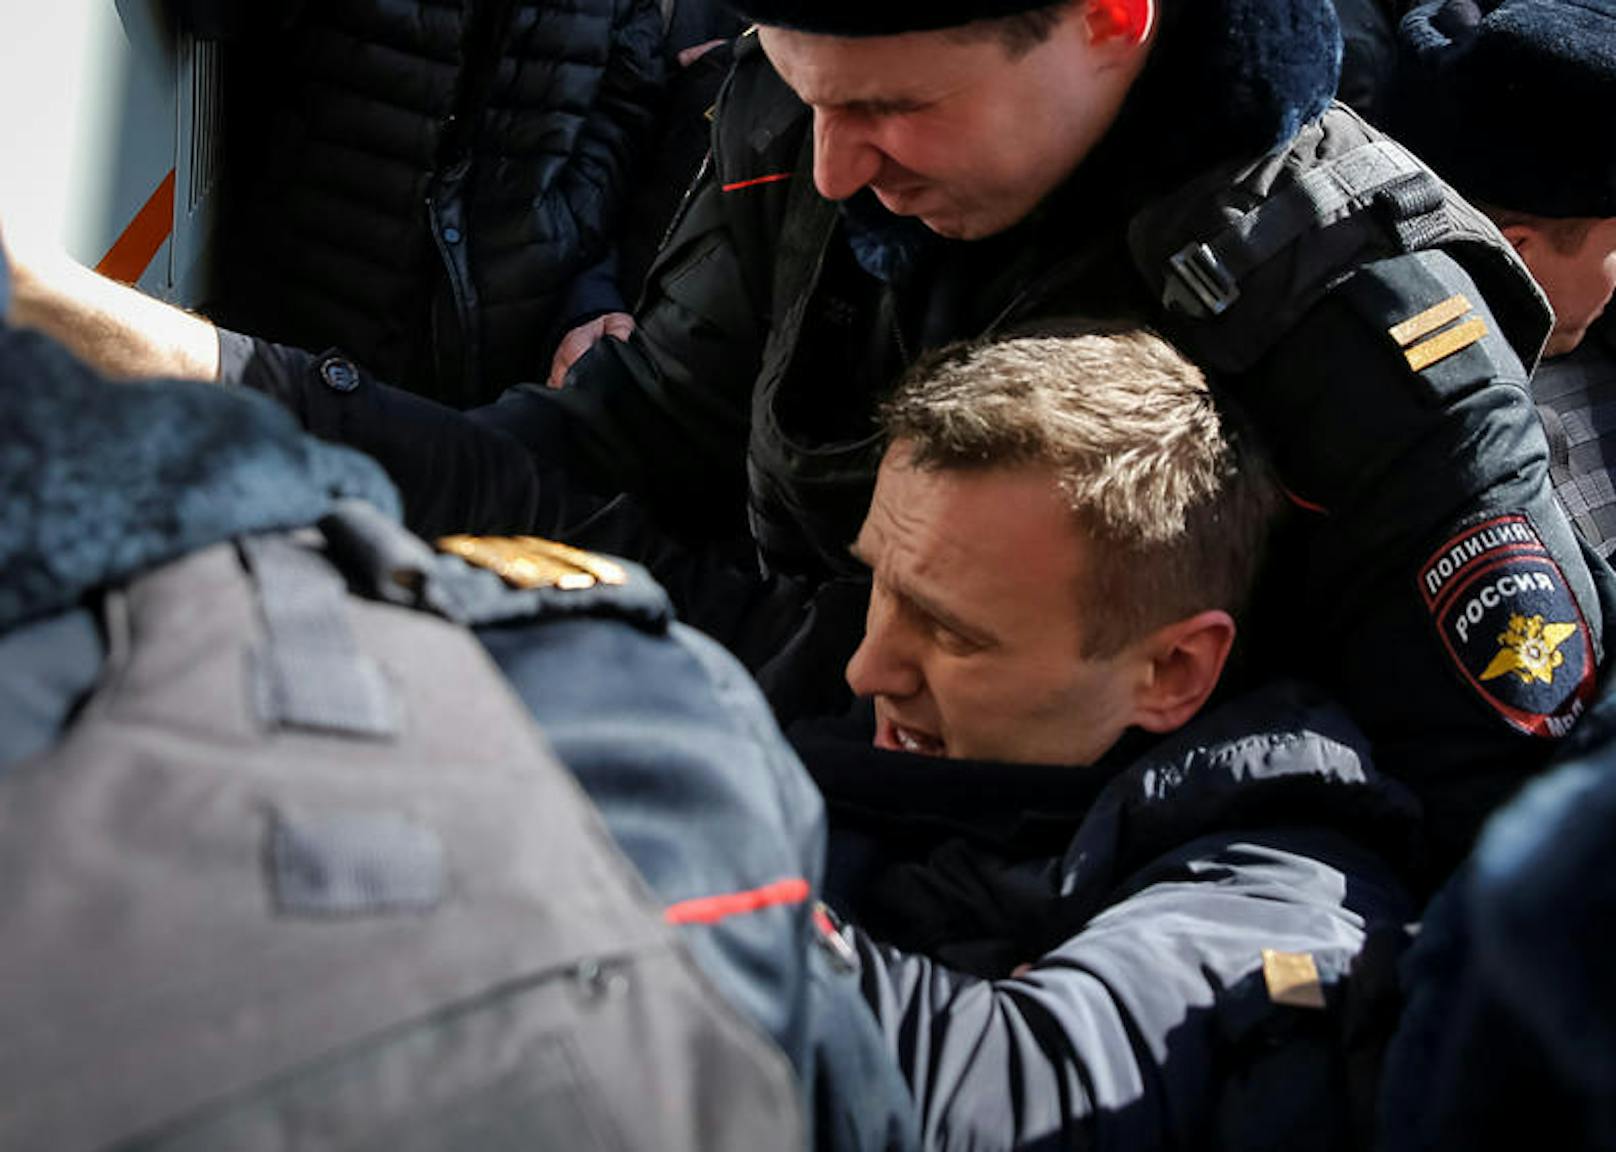 Bereits im März war der russische Polit-Aktivist (41) während eines Anti-Korruptions-Protestes festgenommen worden.